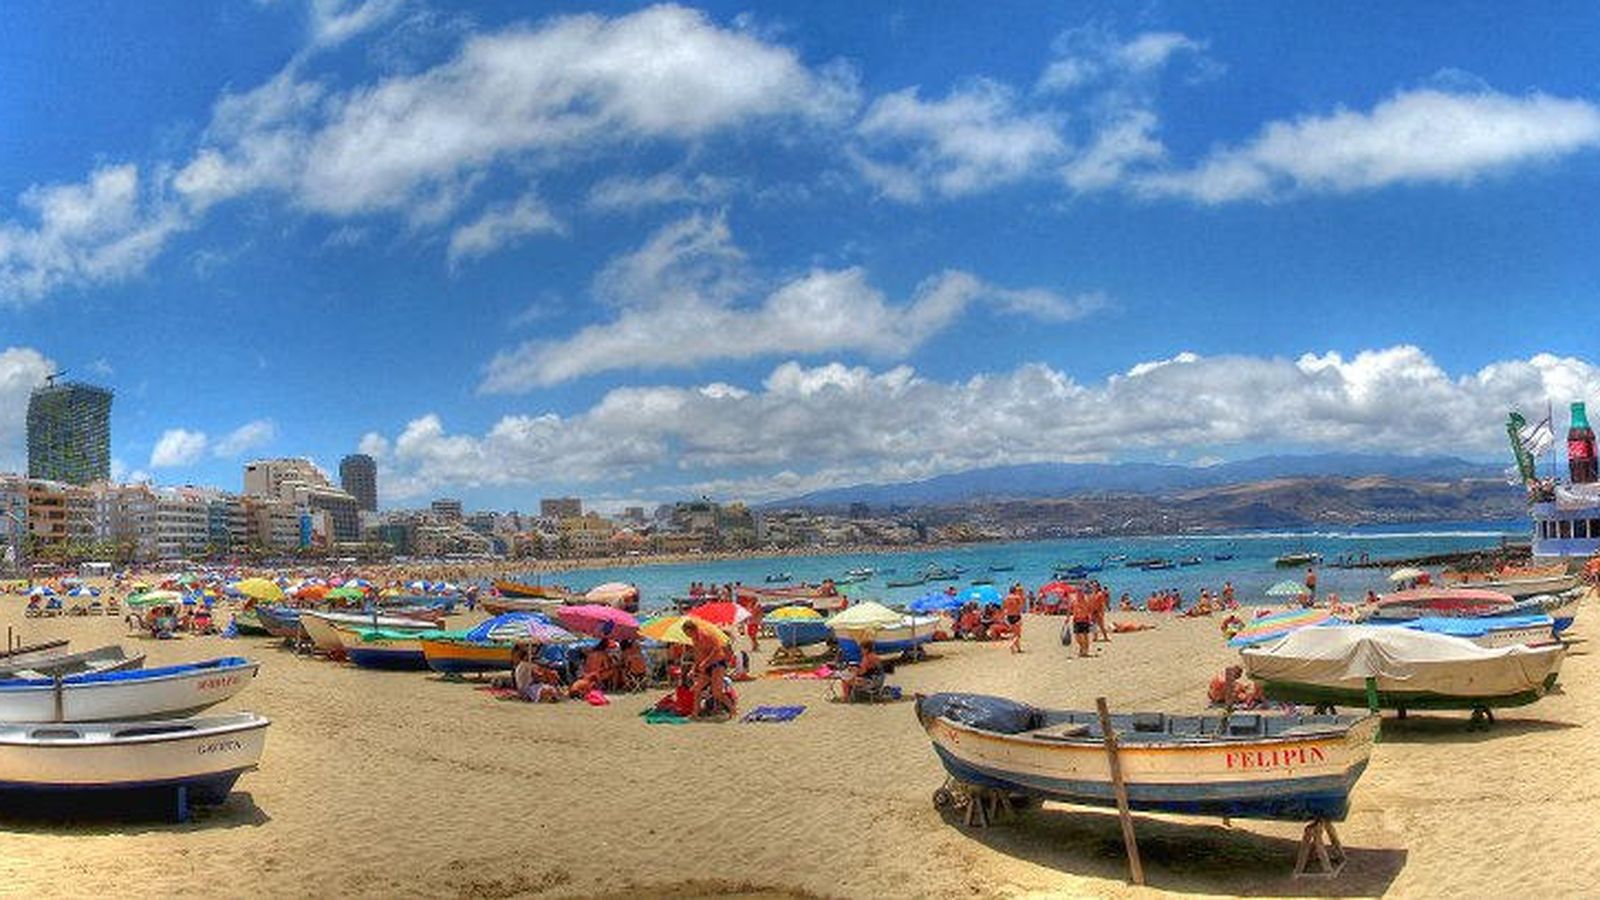 Foto: Playa de las Canteras, Las Palmas de Gran Canaria, Canarias (Flickr/Elcoleccionistadeimágenes)